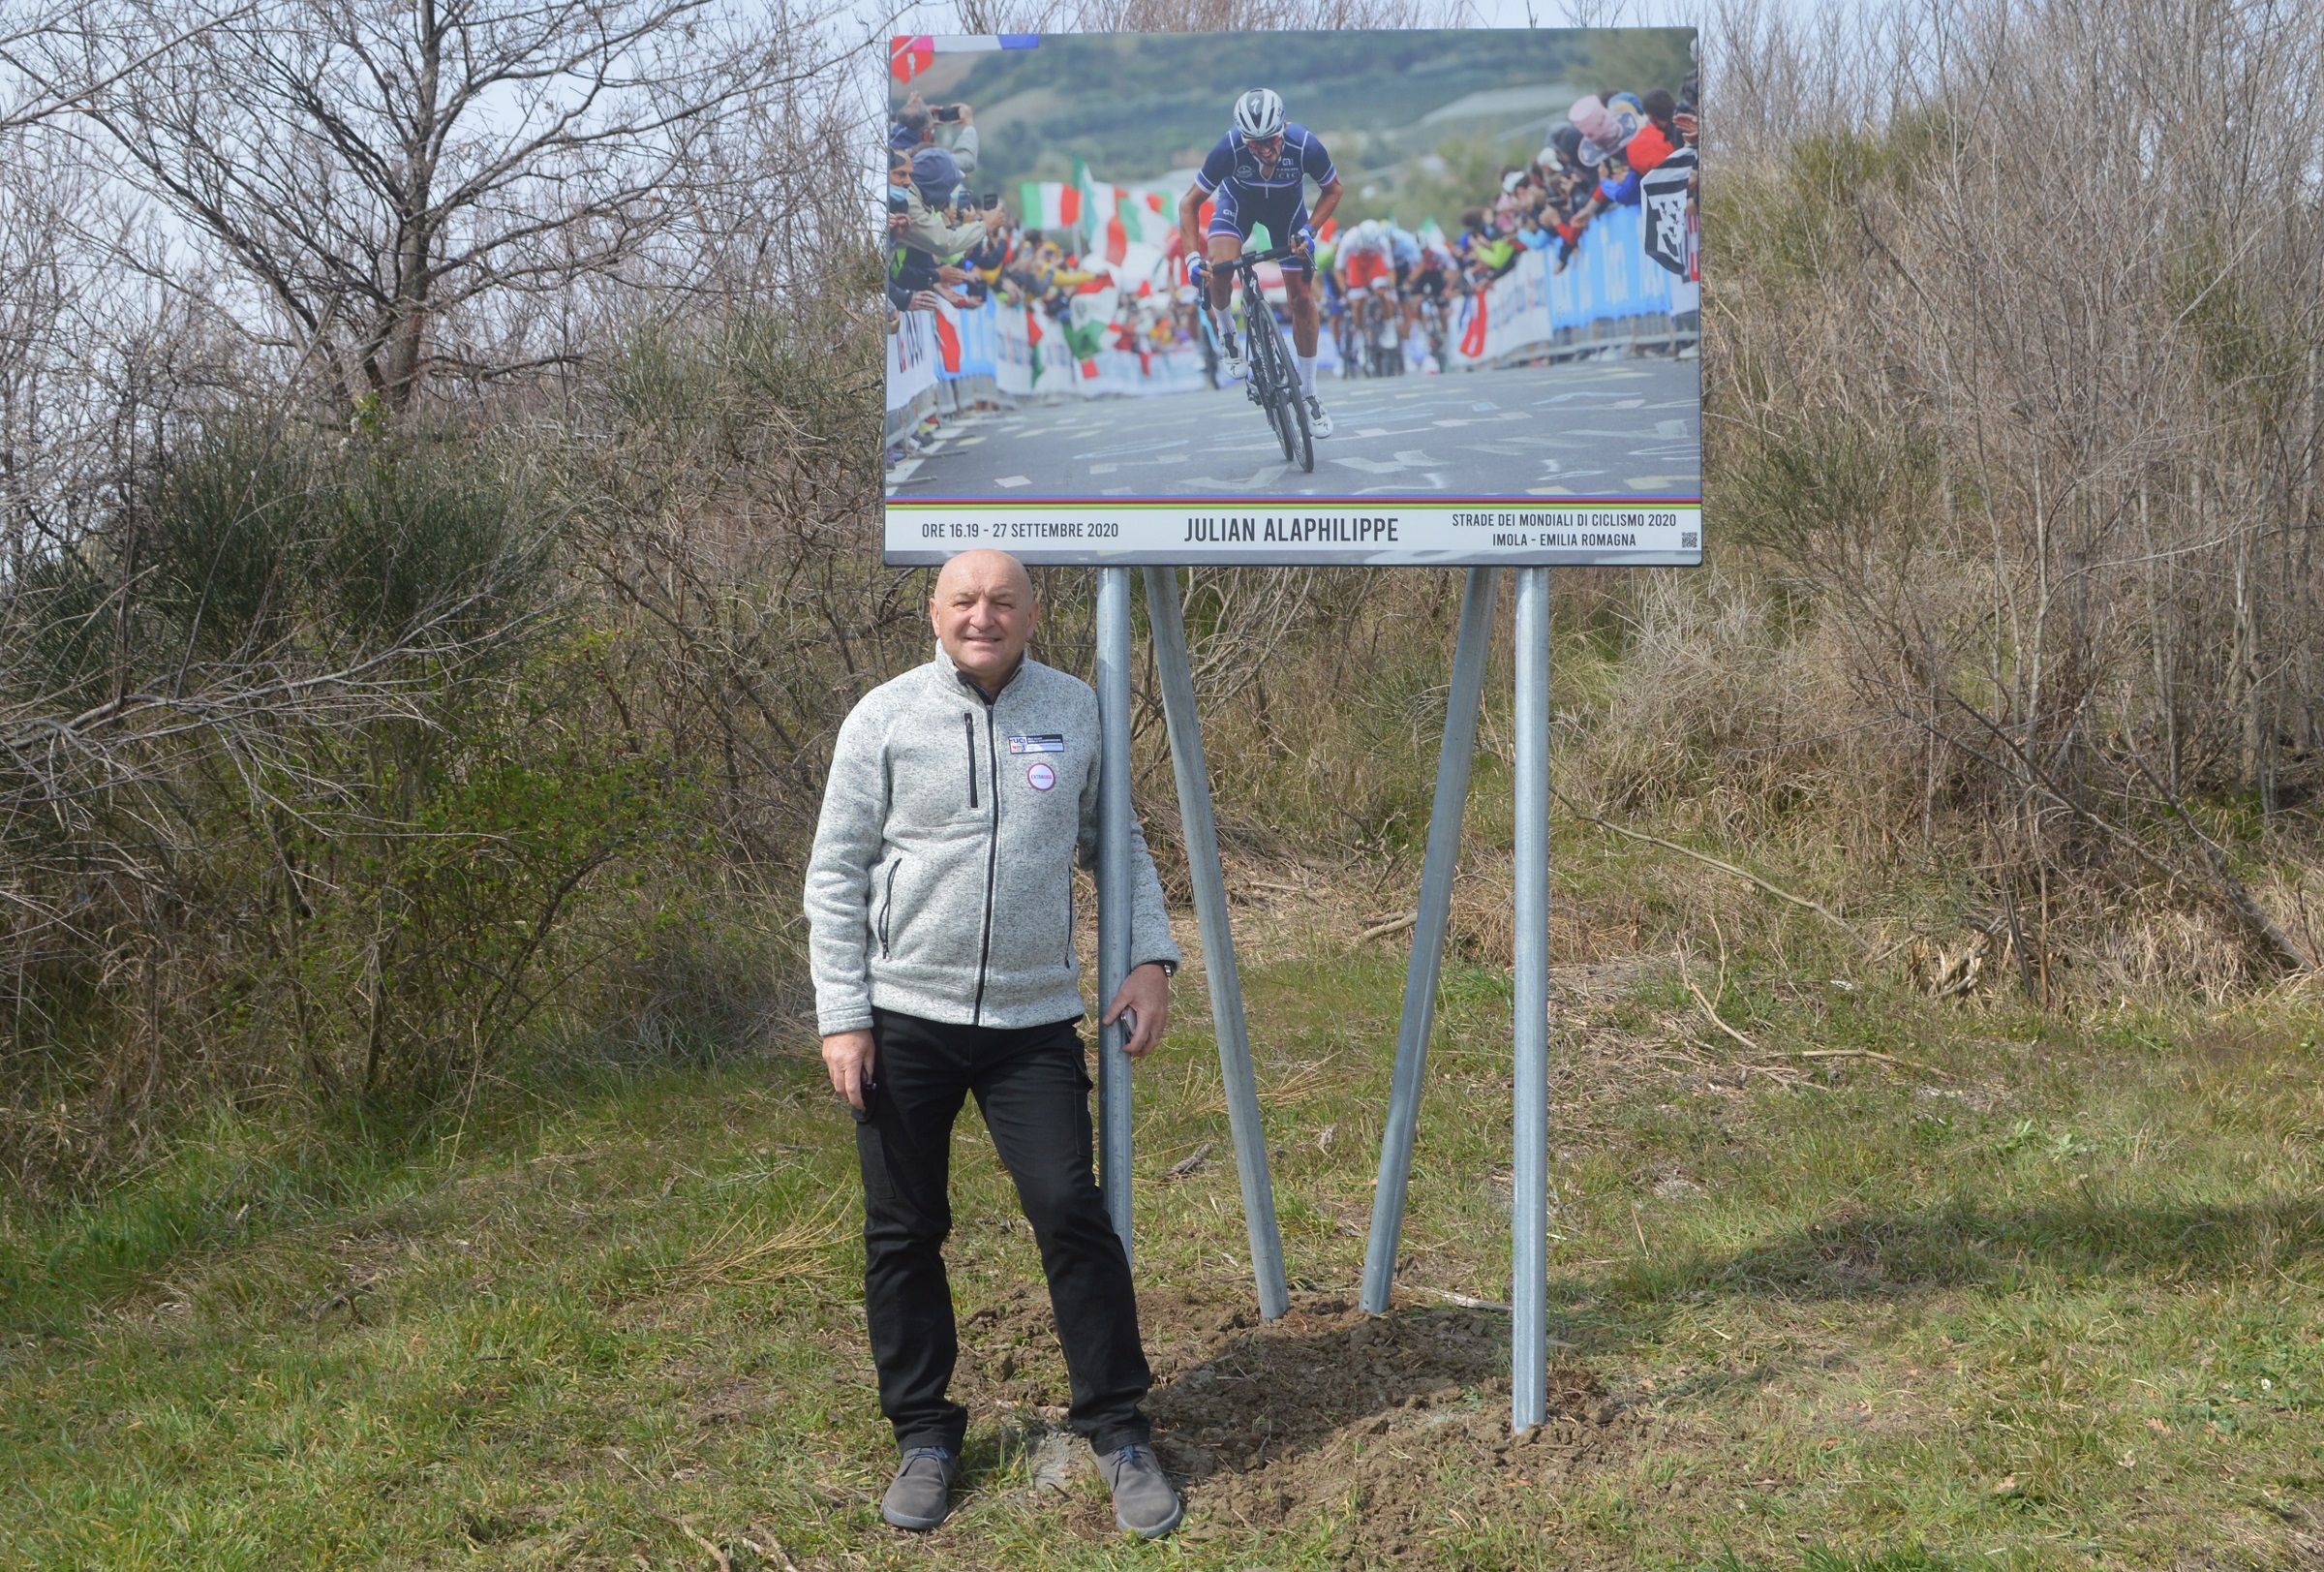 Aprile 2022 – Il percorso dei Campionati del Mondo 2020 ad Imola ora è un circuito permanente dedicato ai cicloturisti